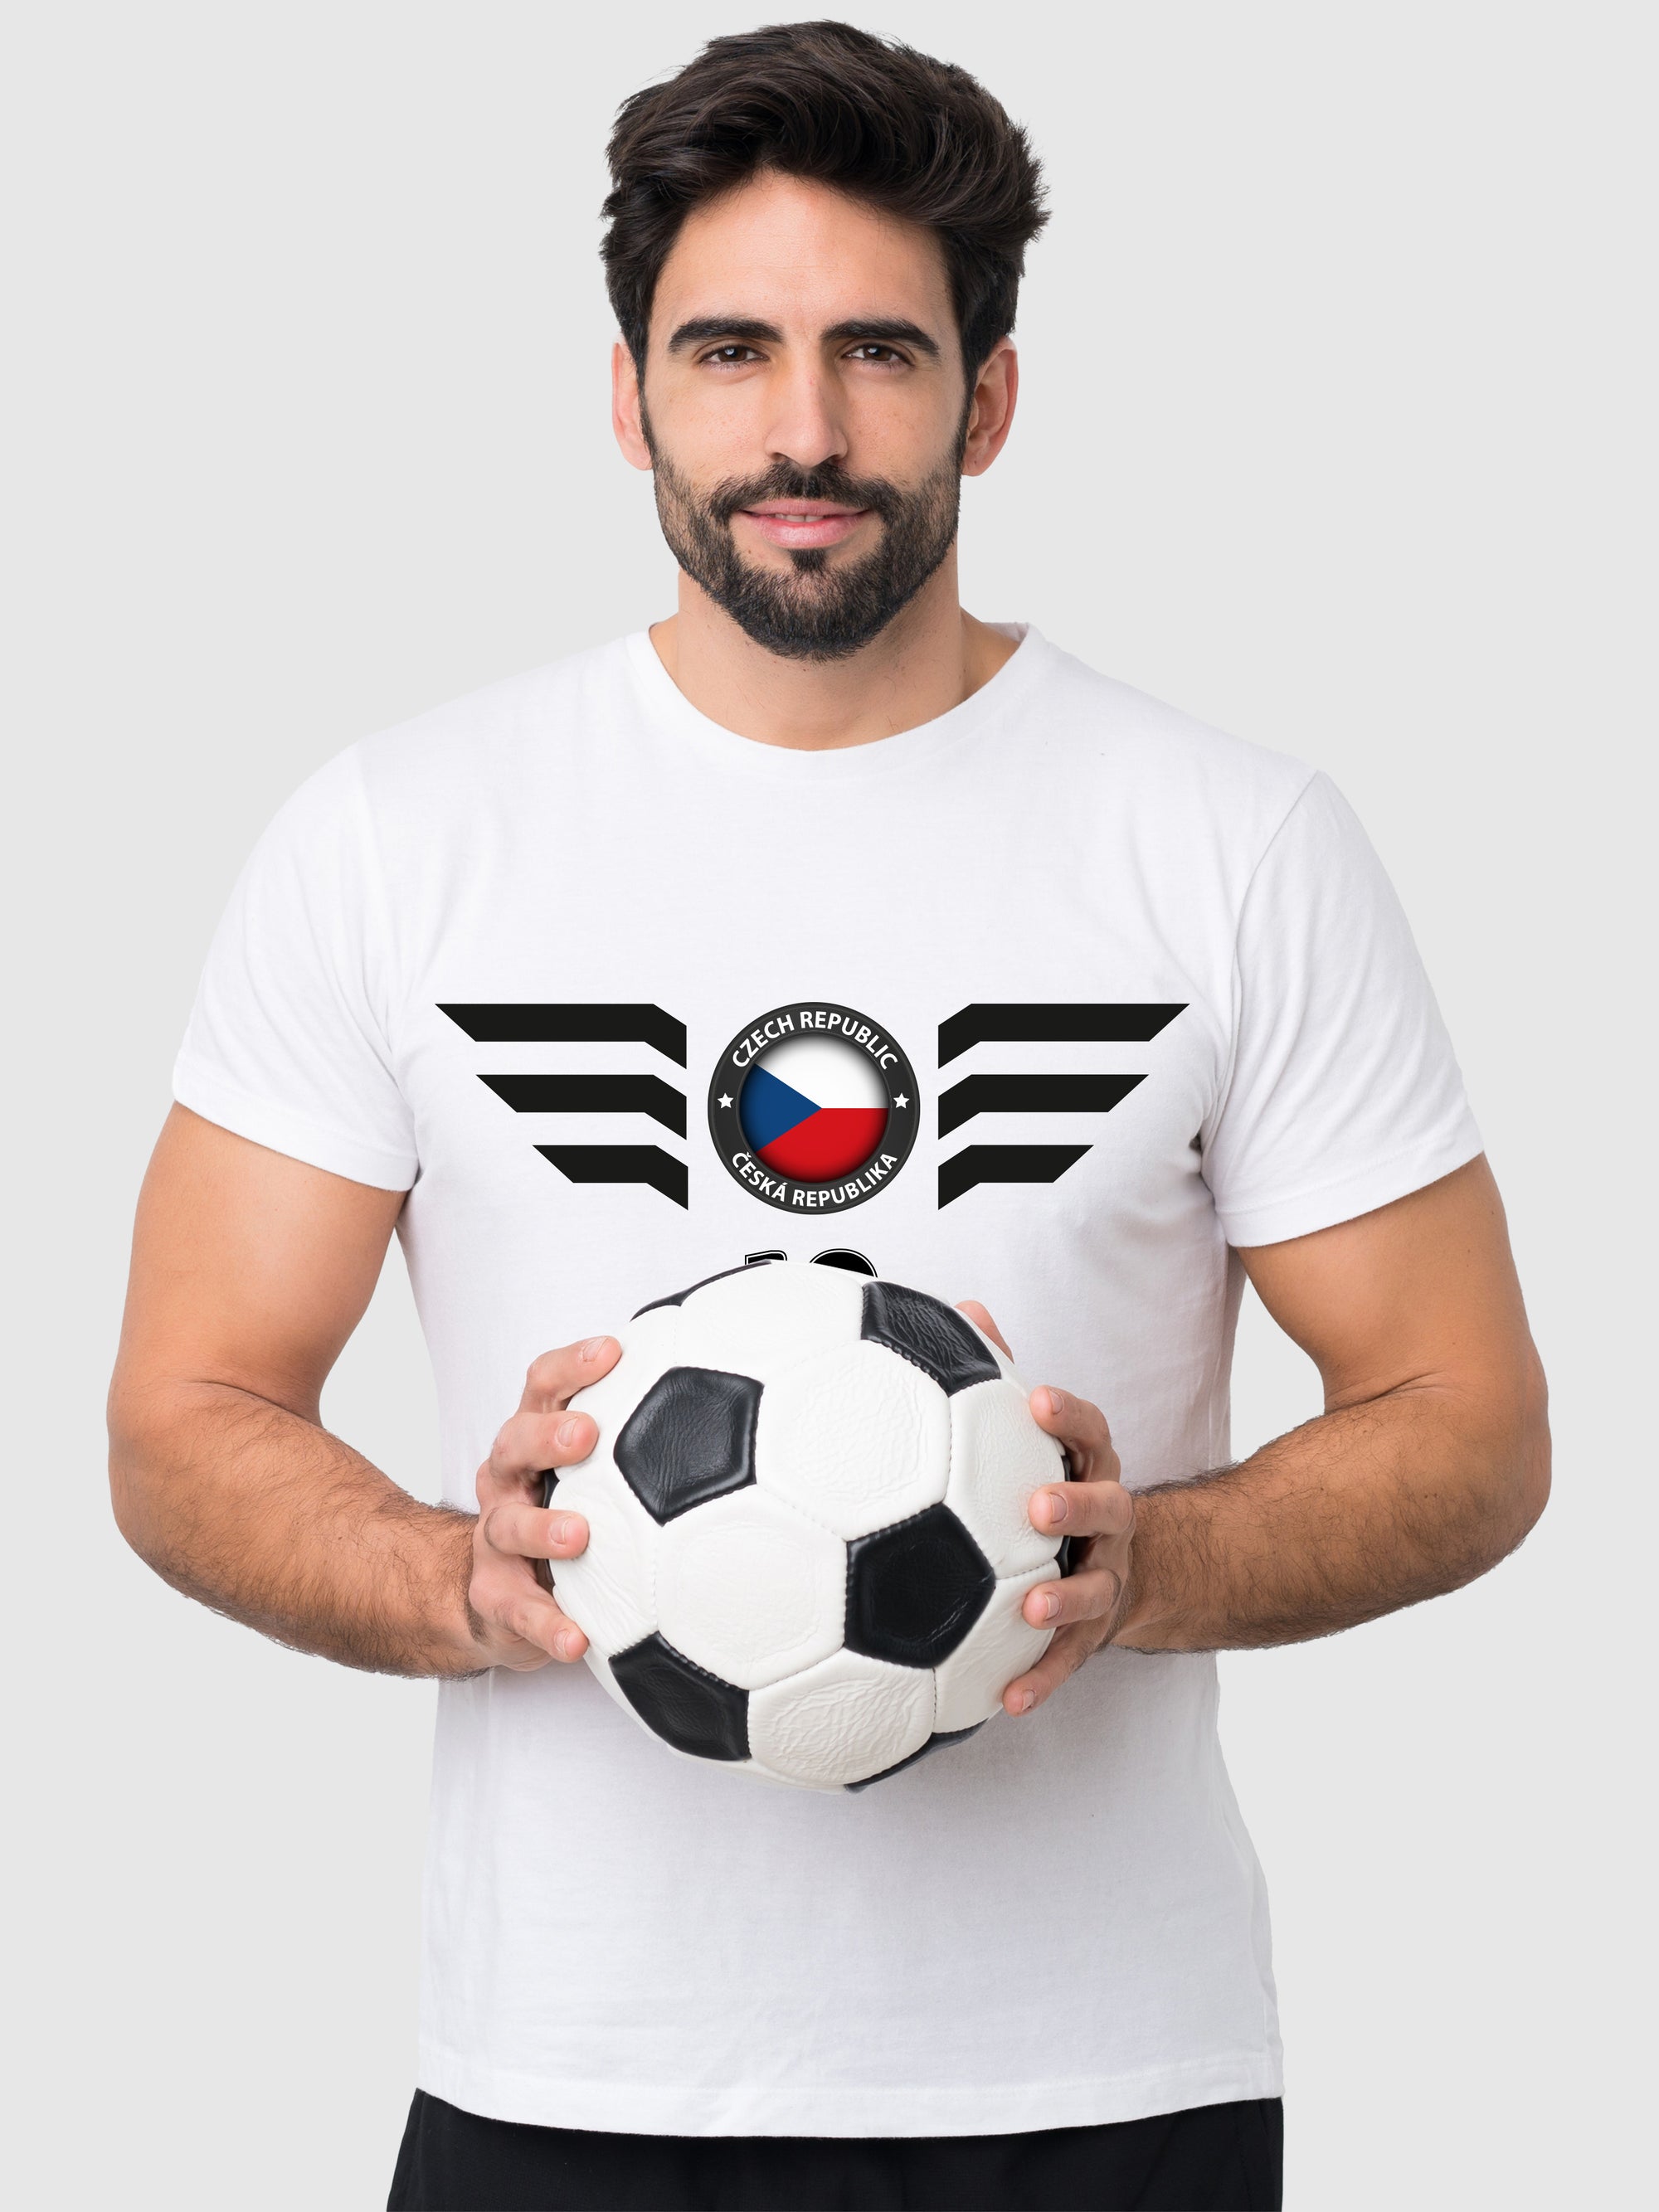 Die tschechische Republik Fußball Trikot mit Dein Name